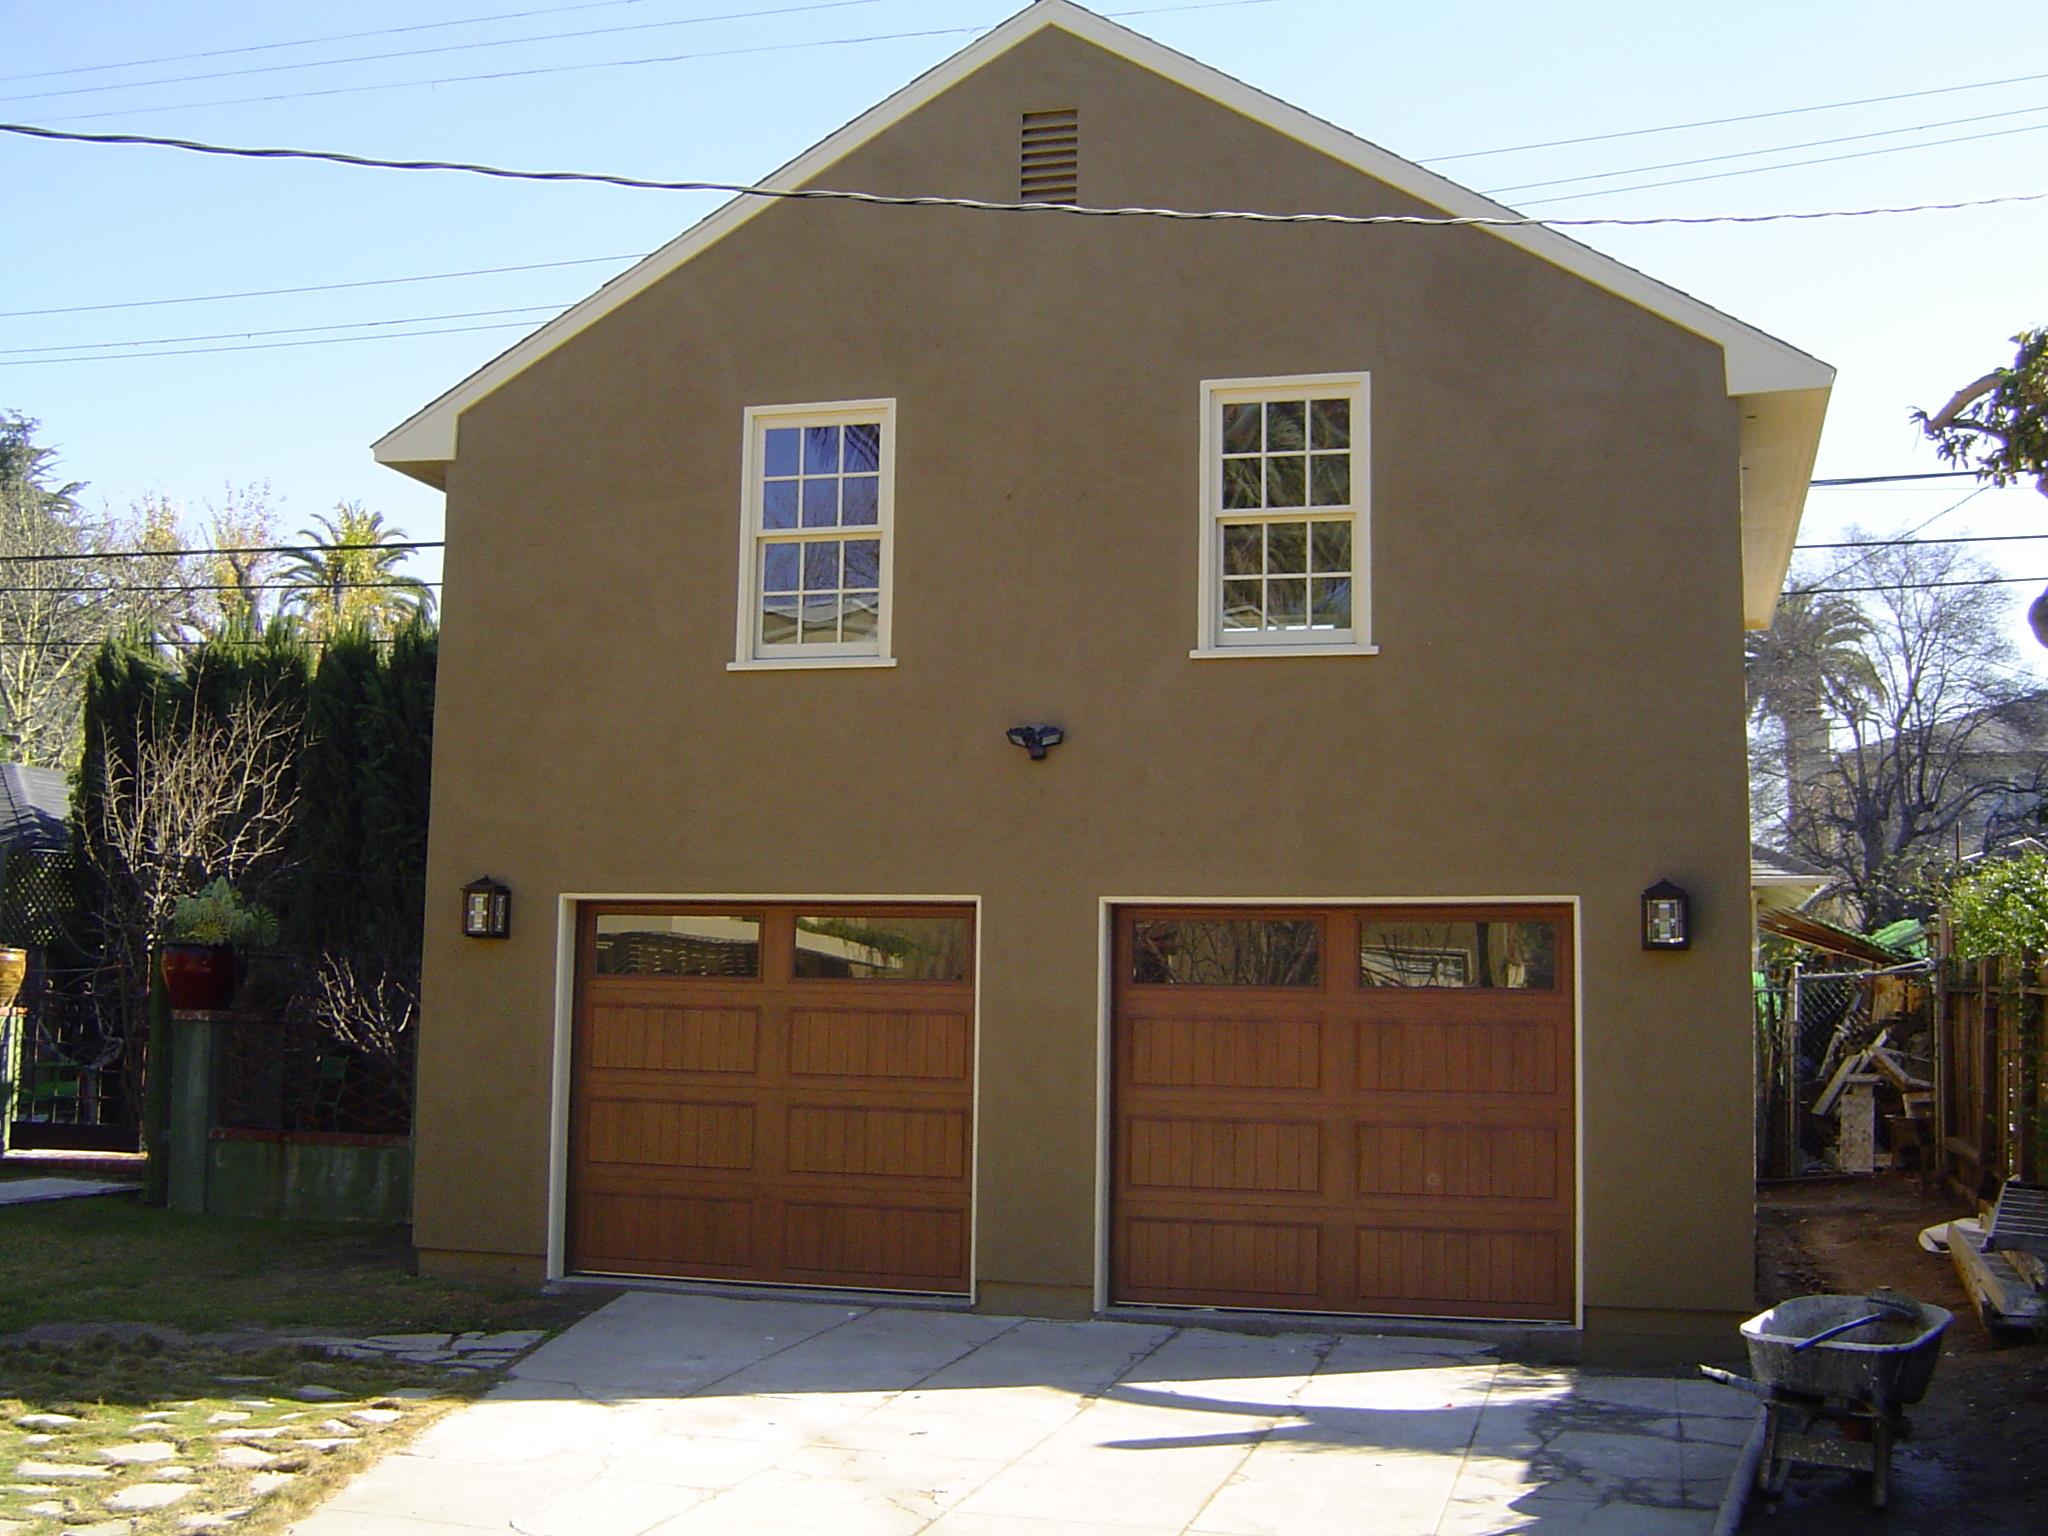 Hanover garage 24x24 with garage door  in Los Angeles,California.ID number 99398-6.